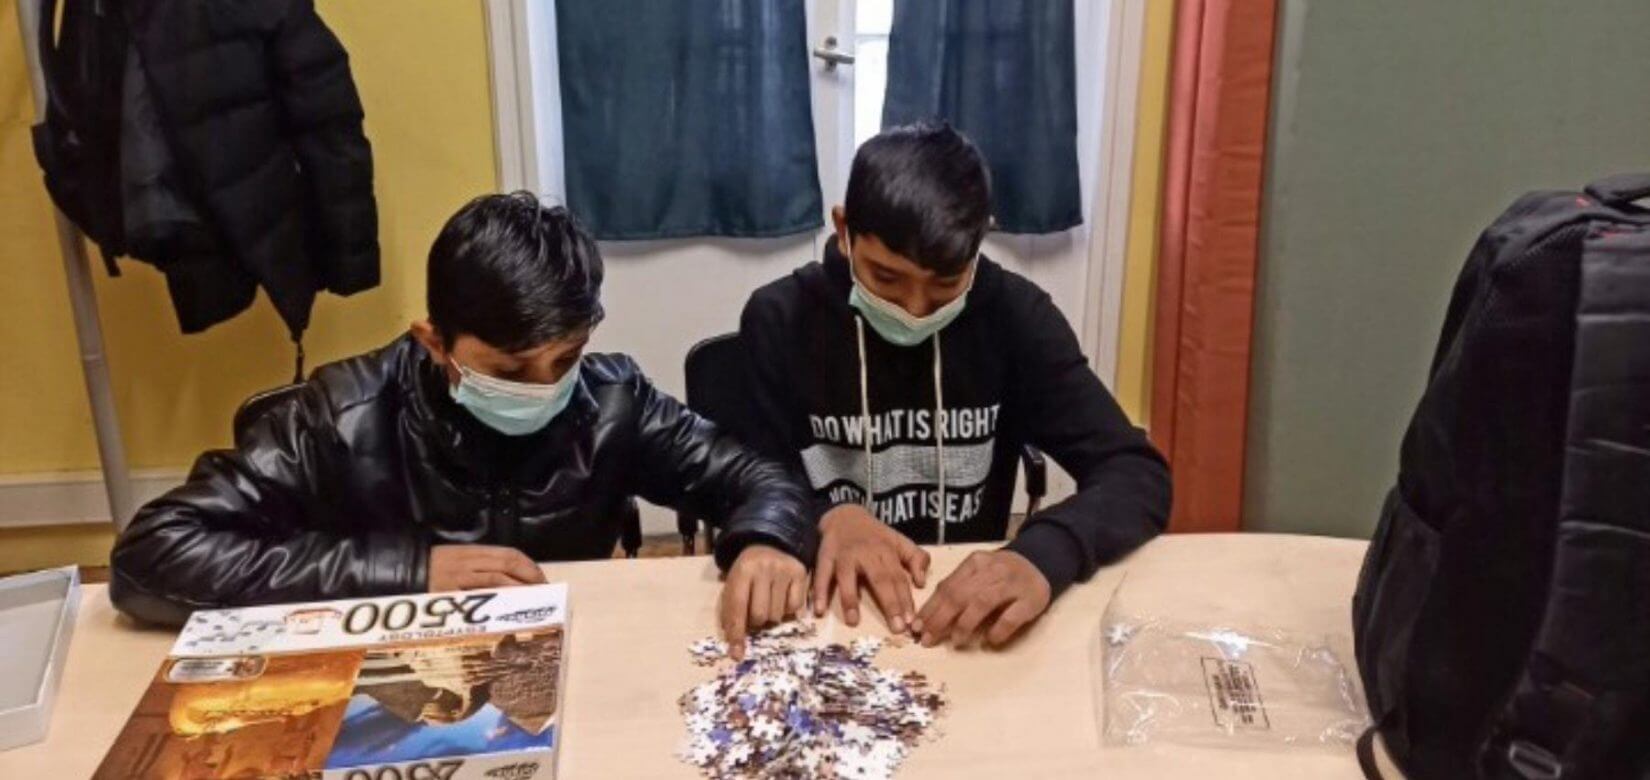 Στον δρόμο, υπό συνθήκες παγετού, εντοπίστηκαν δύο 13χρονα προσφυγόπουλα